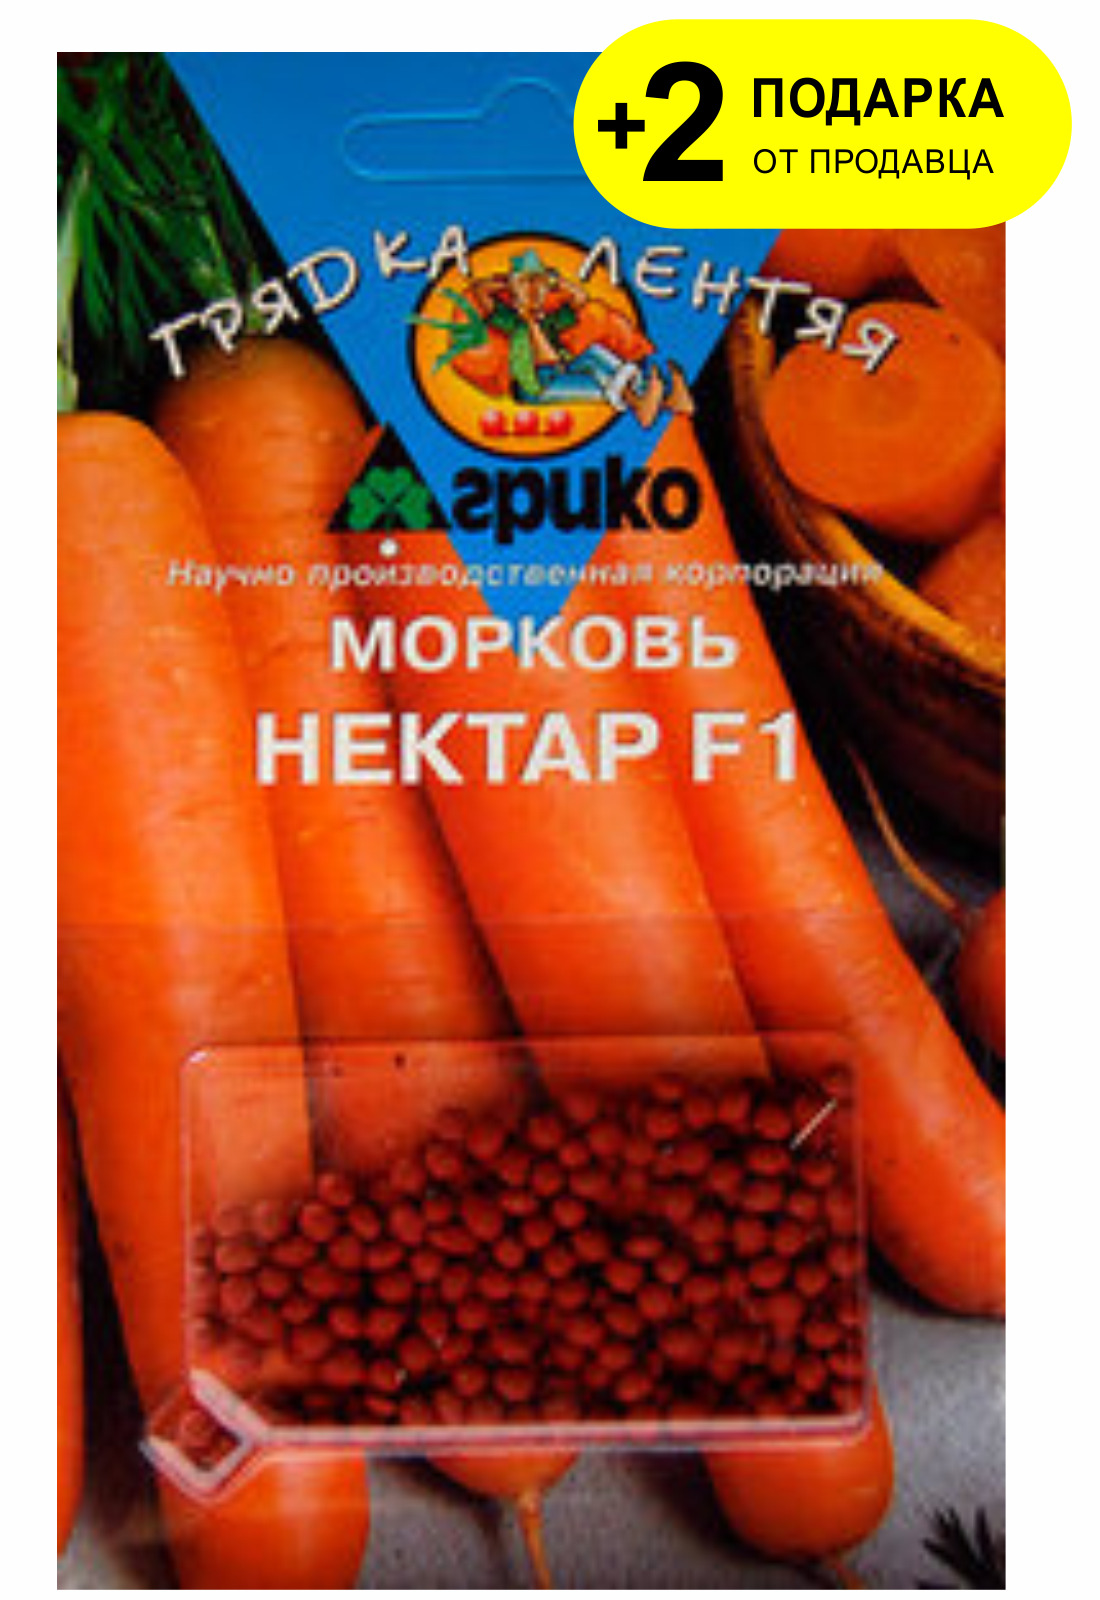 Морковь нектар. Морковь нектар f1. Морковь нектар Агрико. Морковь дражированная Канада f1/Агрико/ 100 шт. Семена морковь нектар f1 (дражир) 300шт (гл).